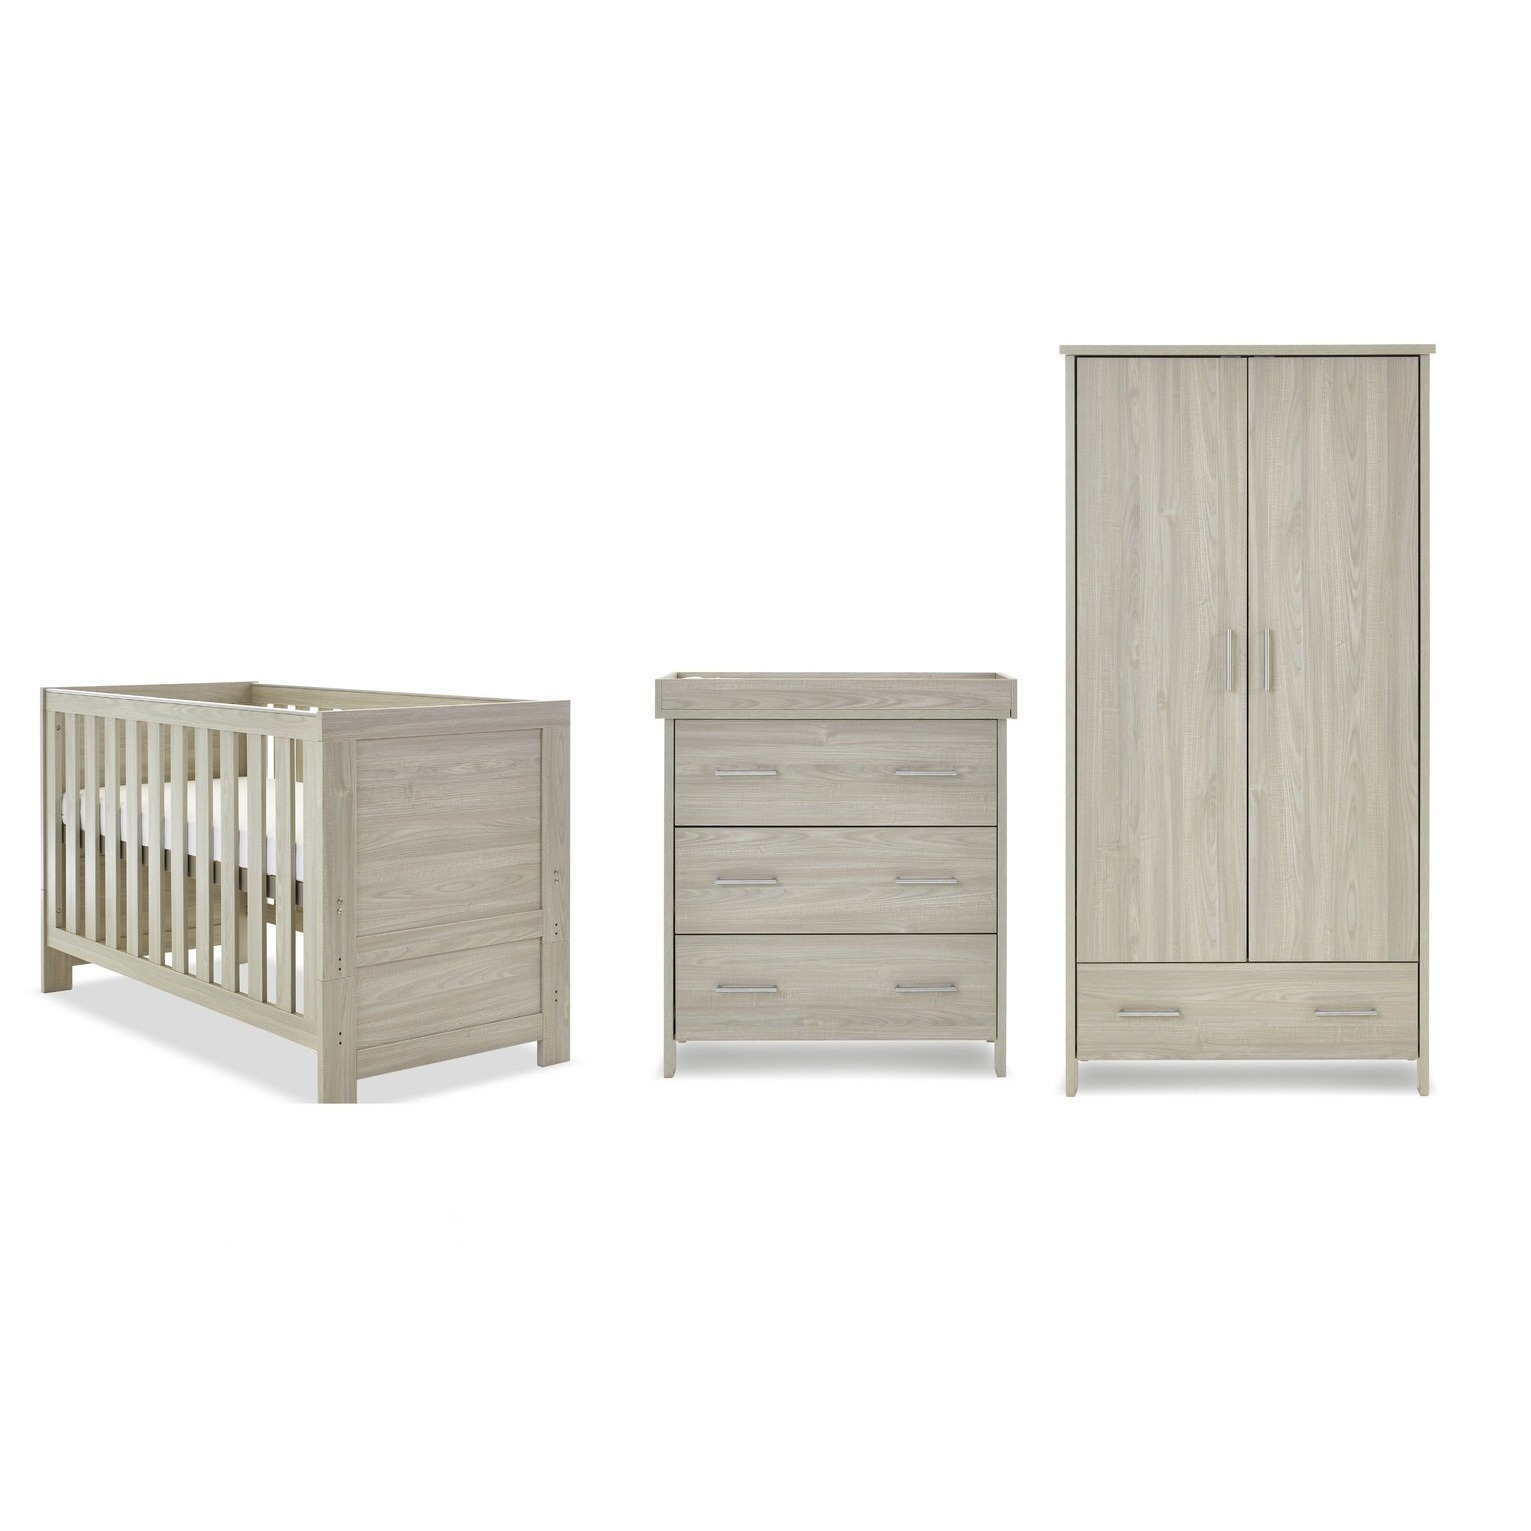 Obaby Nika 3 Piece Nursery Furniture Set - Grey Wash - image 1